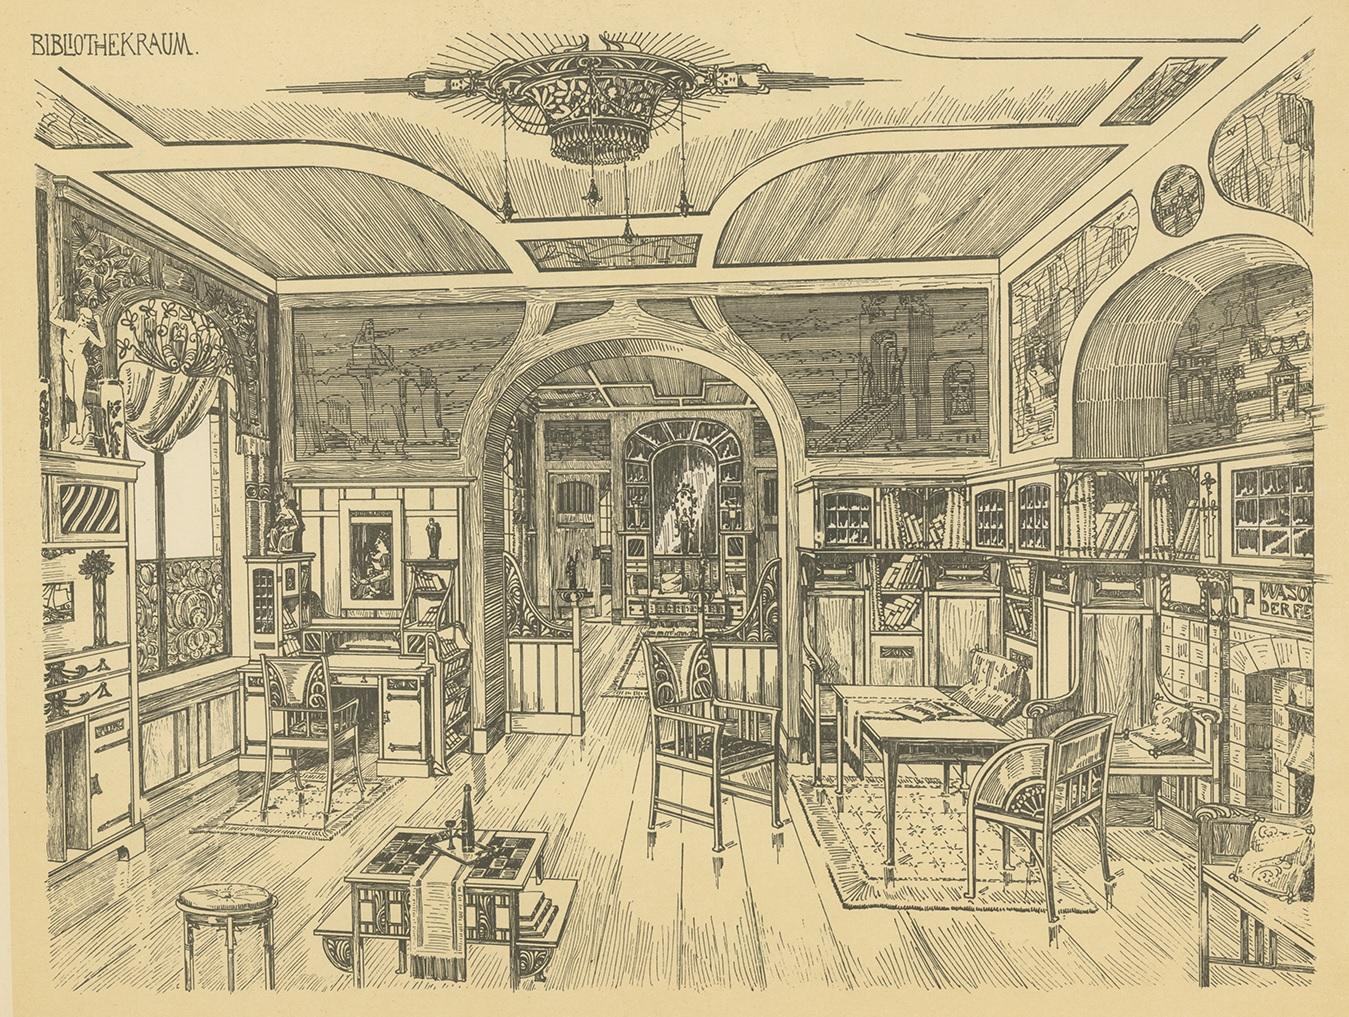 Antiker Druck mit dem Titel 'Bibliothekraum'. 

Lithographie einer Bibliothek. Dieser Druck stammt aus 